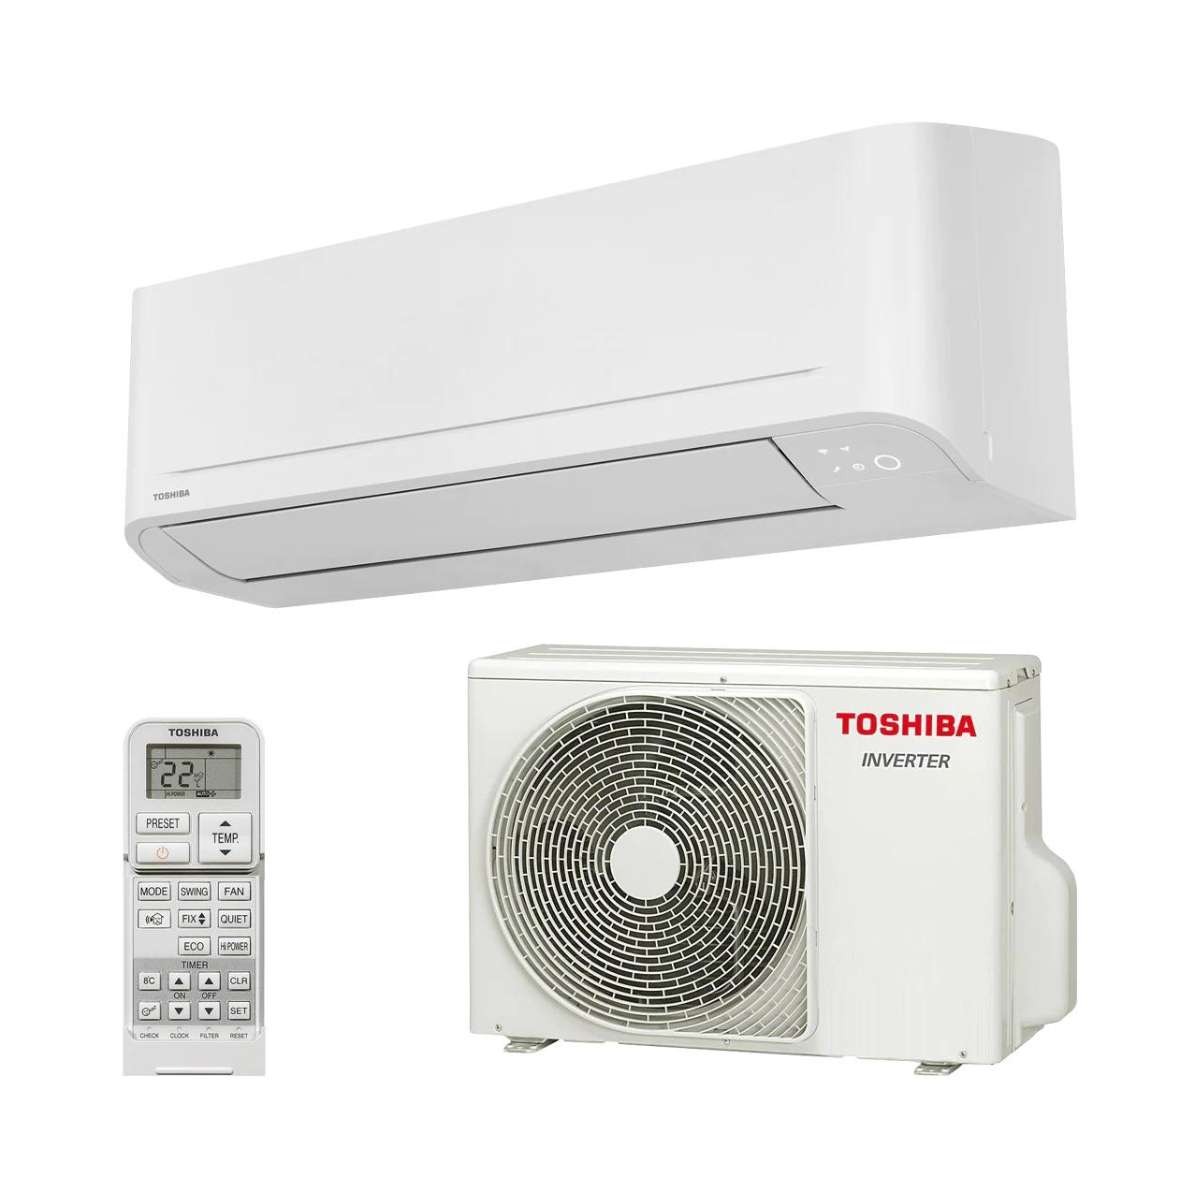 Split klimaanlage Toshiba Seiya+ 10 2,5 kW 9000 BTU mit der Referenz SEIYA+ 10 von der Marke TOSHIBA